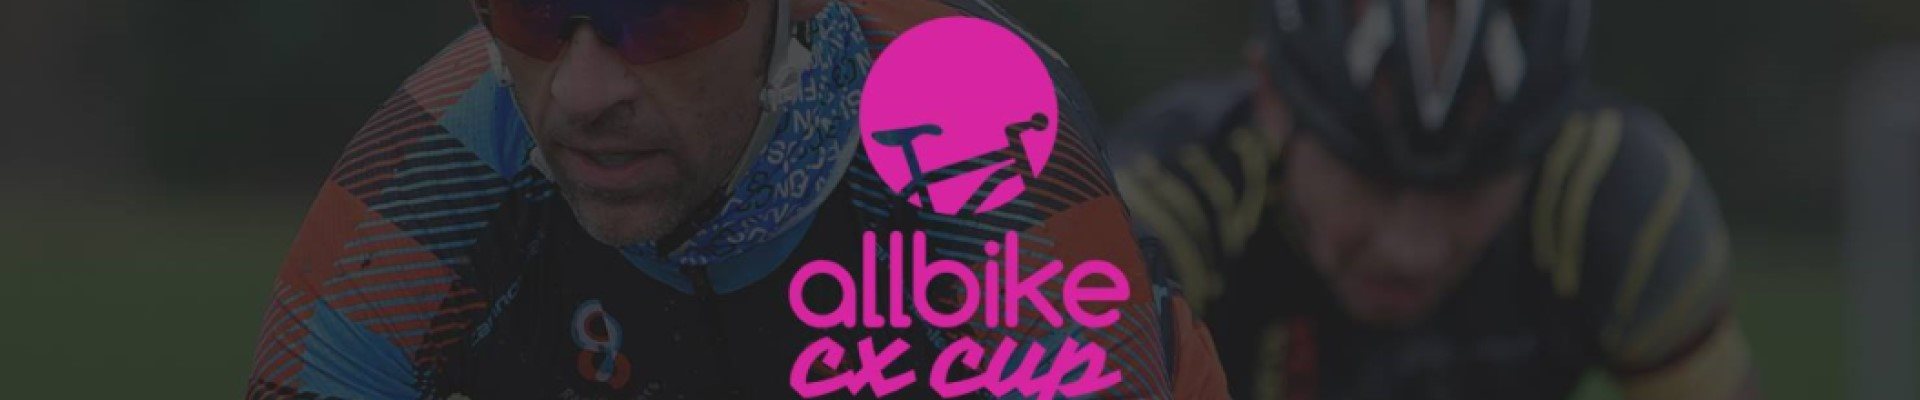 Allbike CX cup 19/20 #1 (Stoholm)